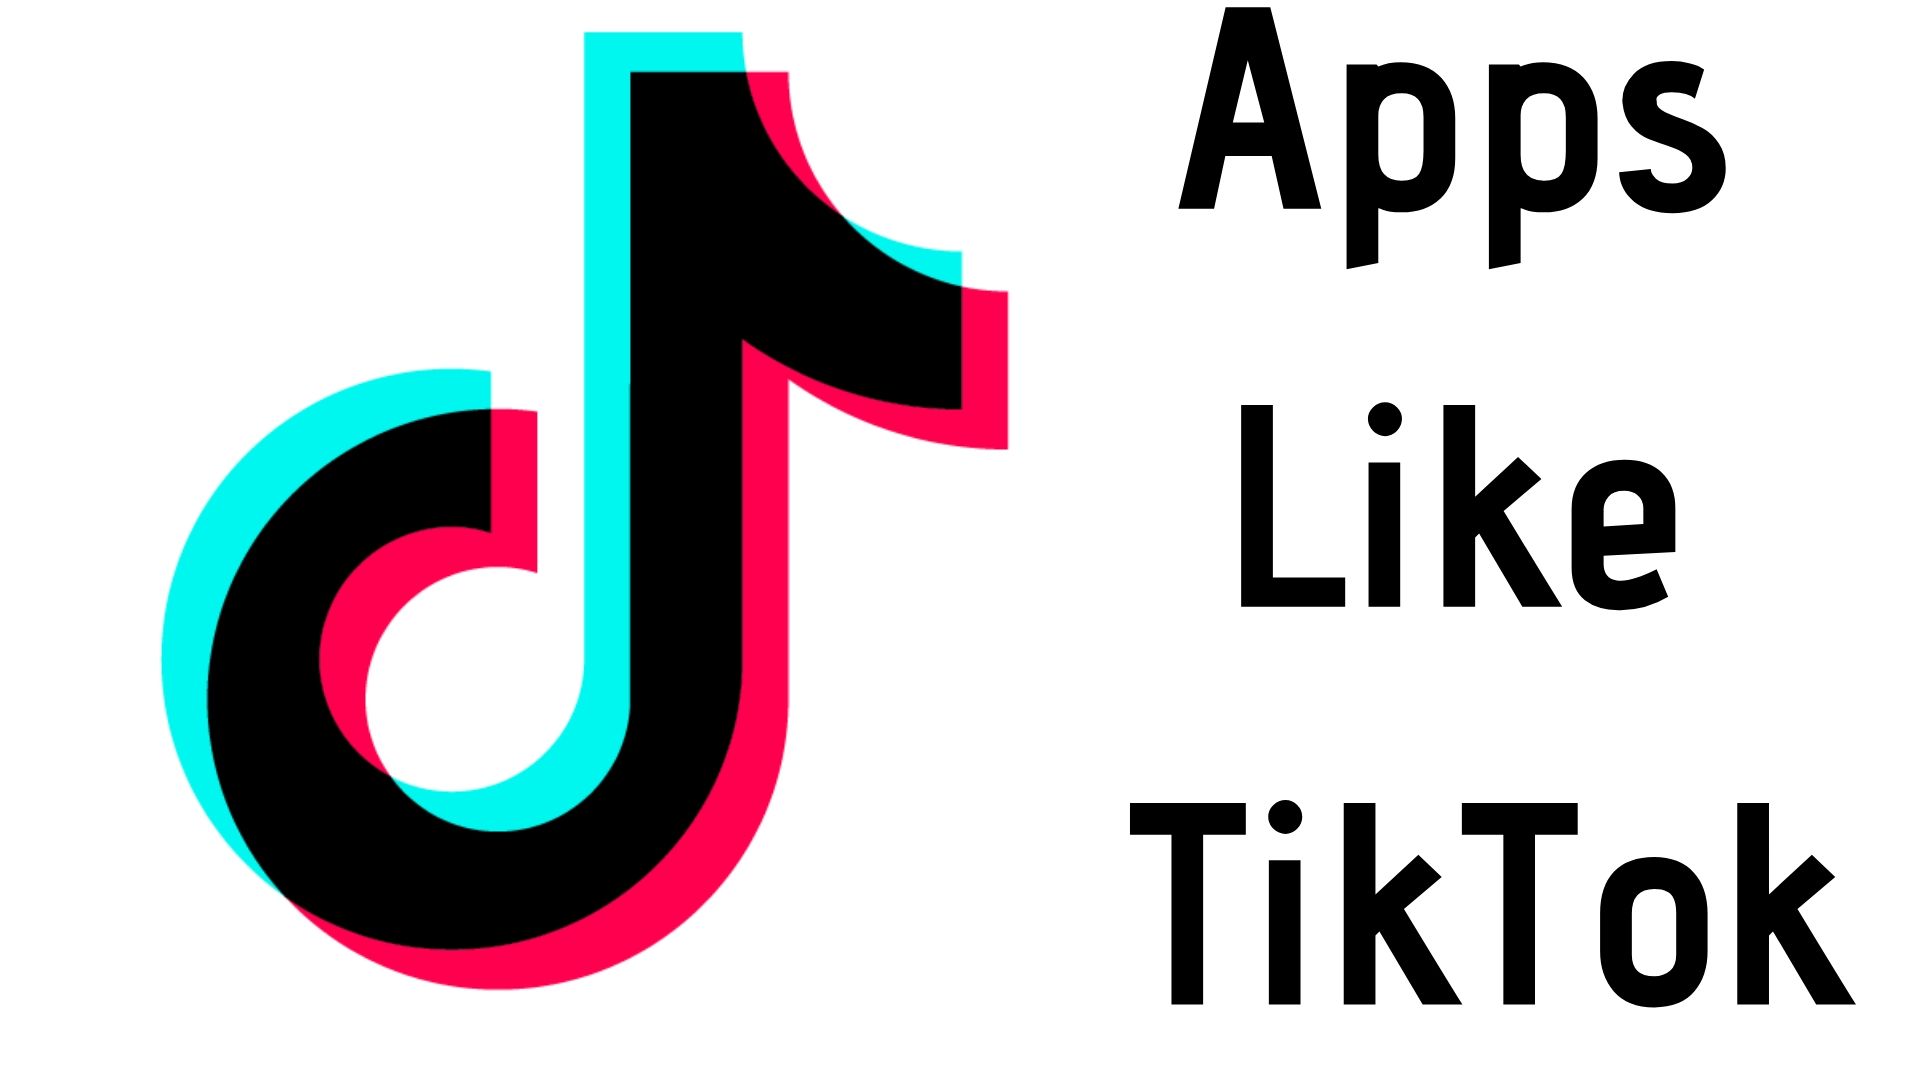 5 Best TikTok Alternatives Apps In 2020 - TechFans.net